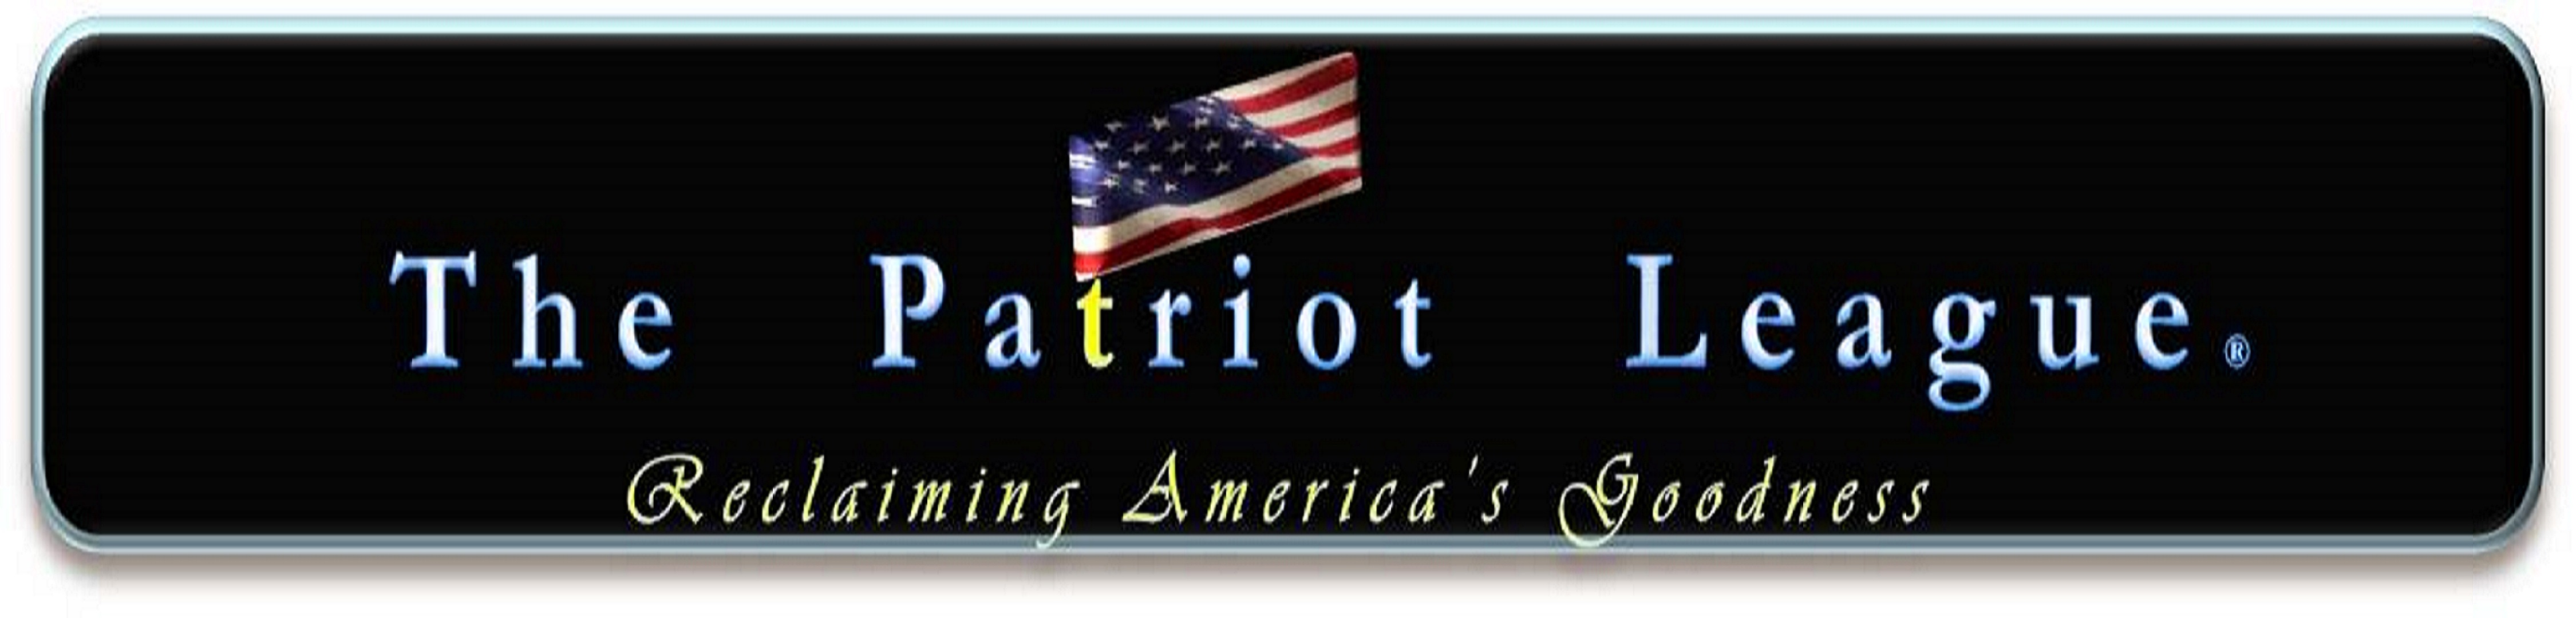 The Patriot League